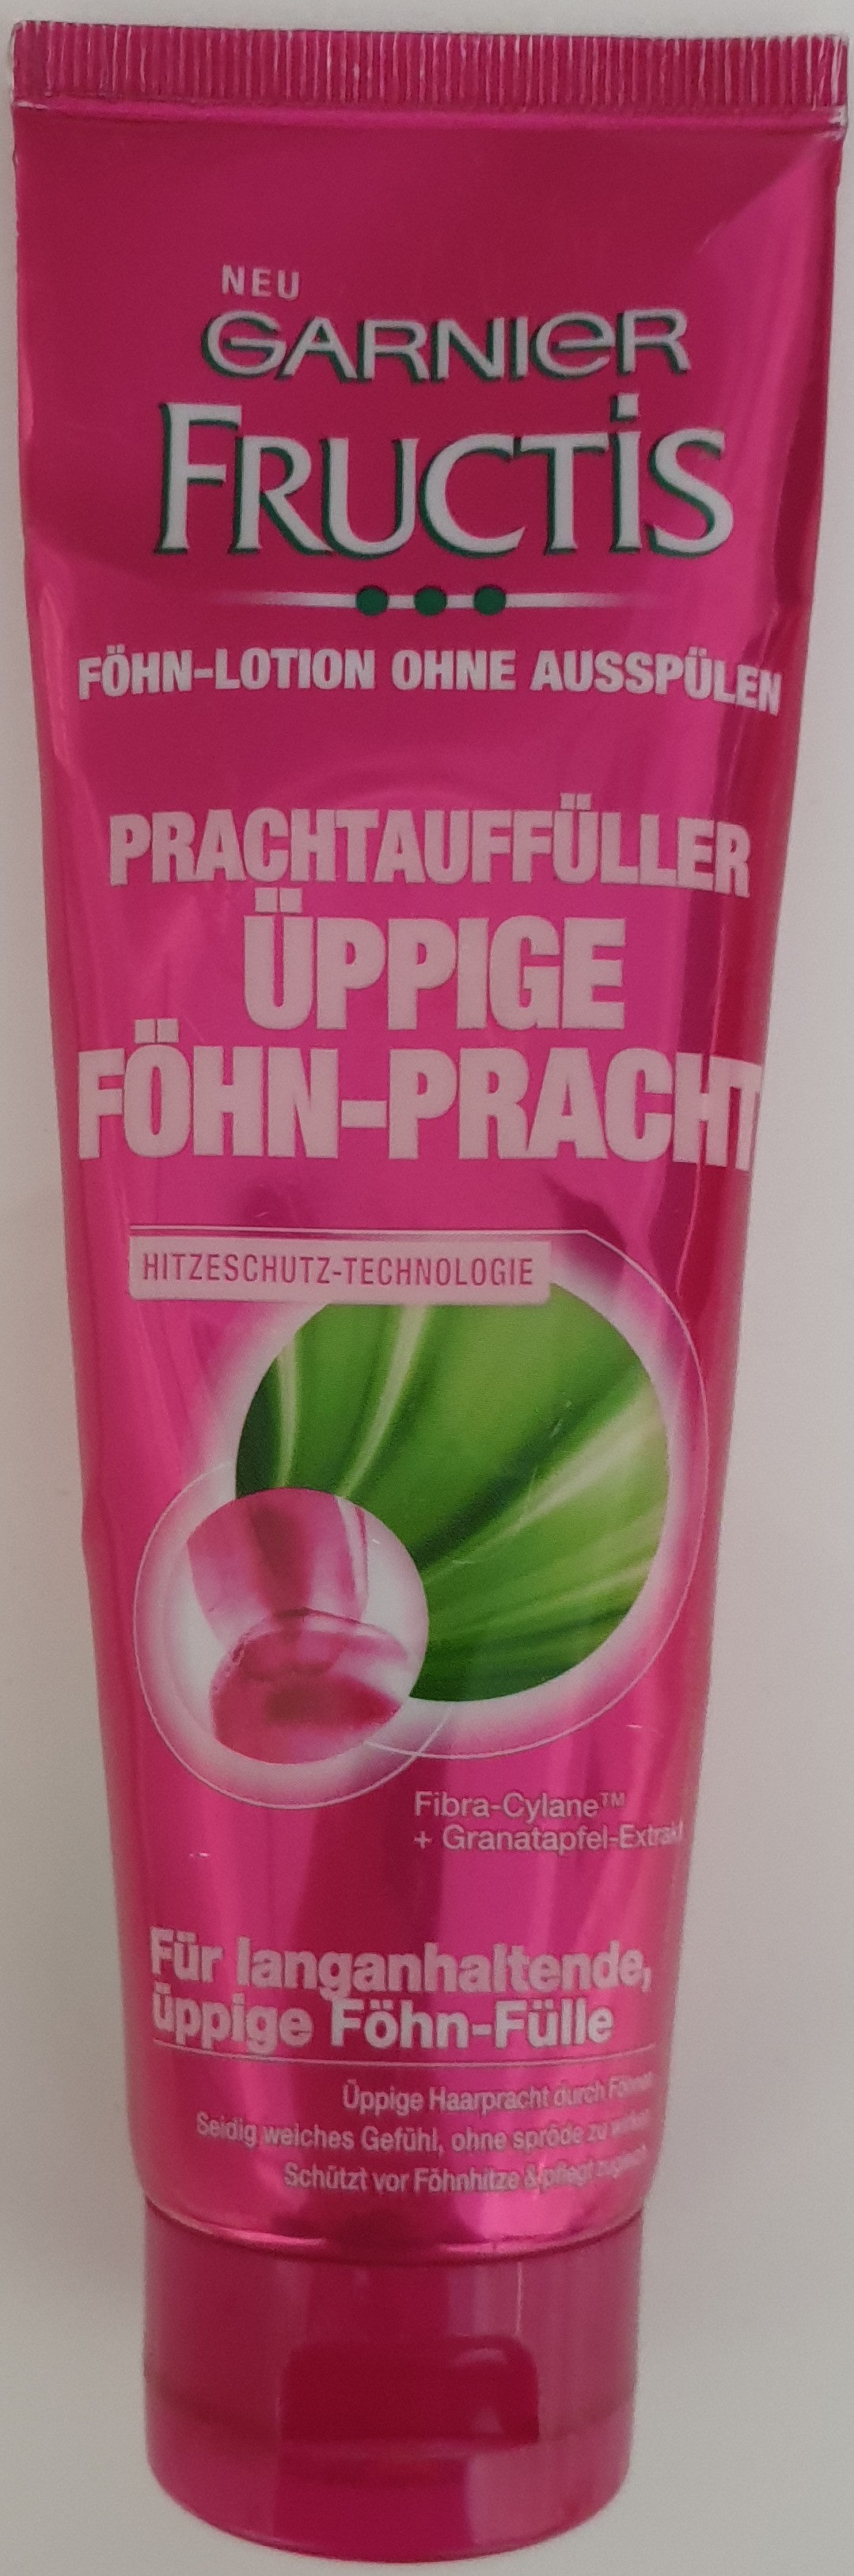 Fructis Prachtauffüller Föhn-Pracht - Produto - de